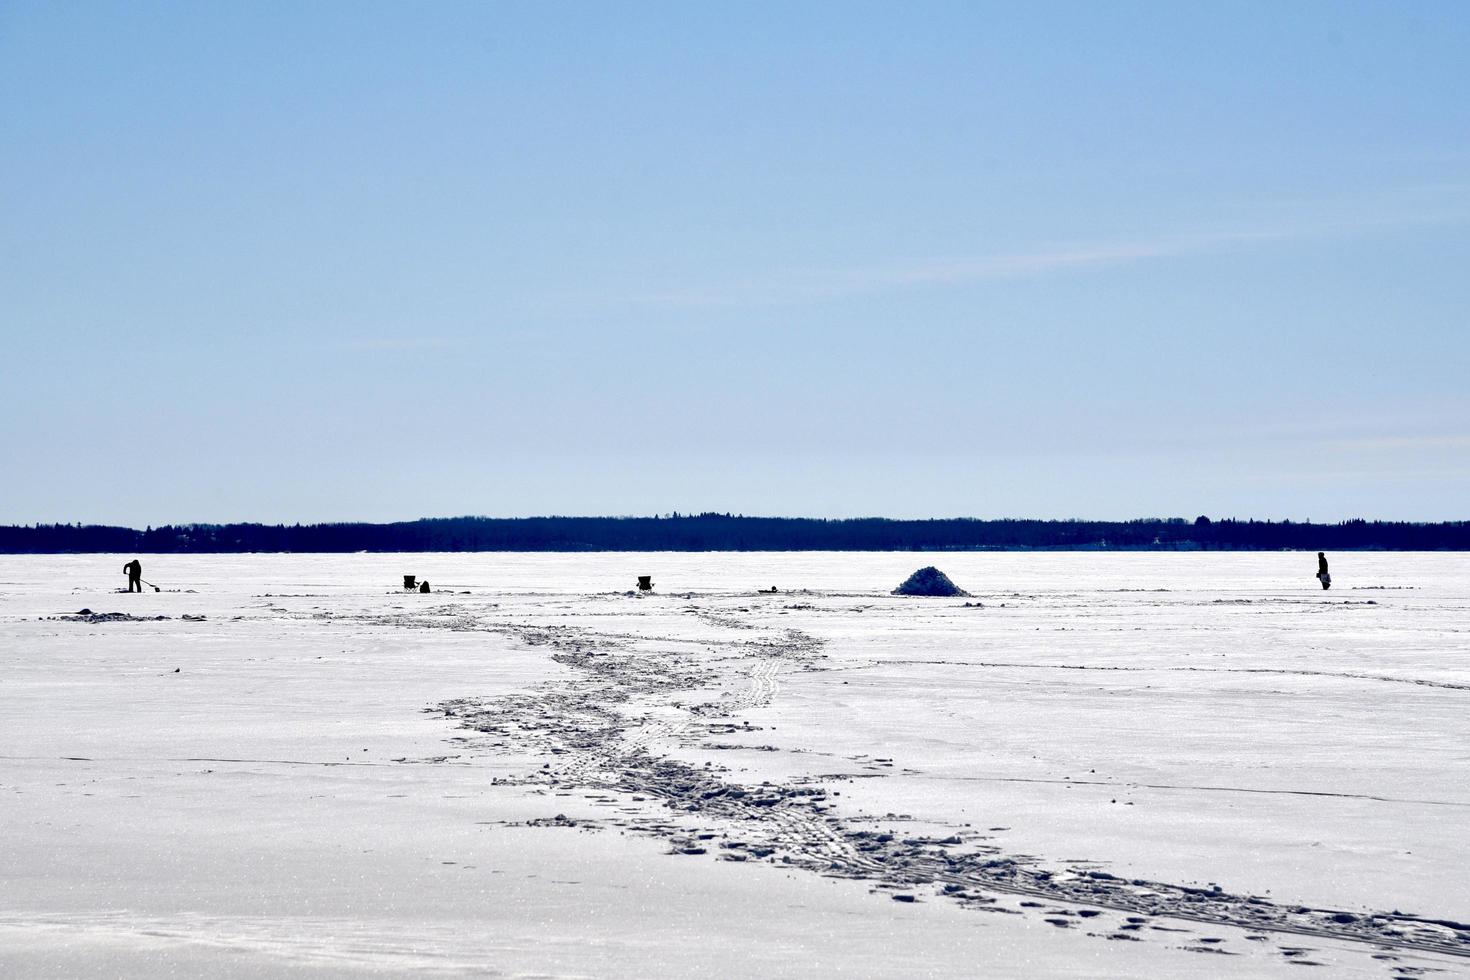 inverno em manitoba - pesca no gelo em um lago congelado foto